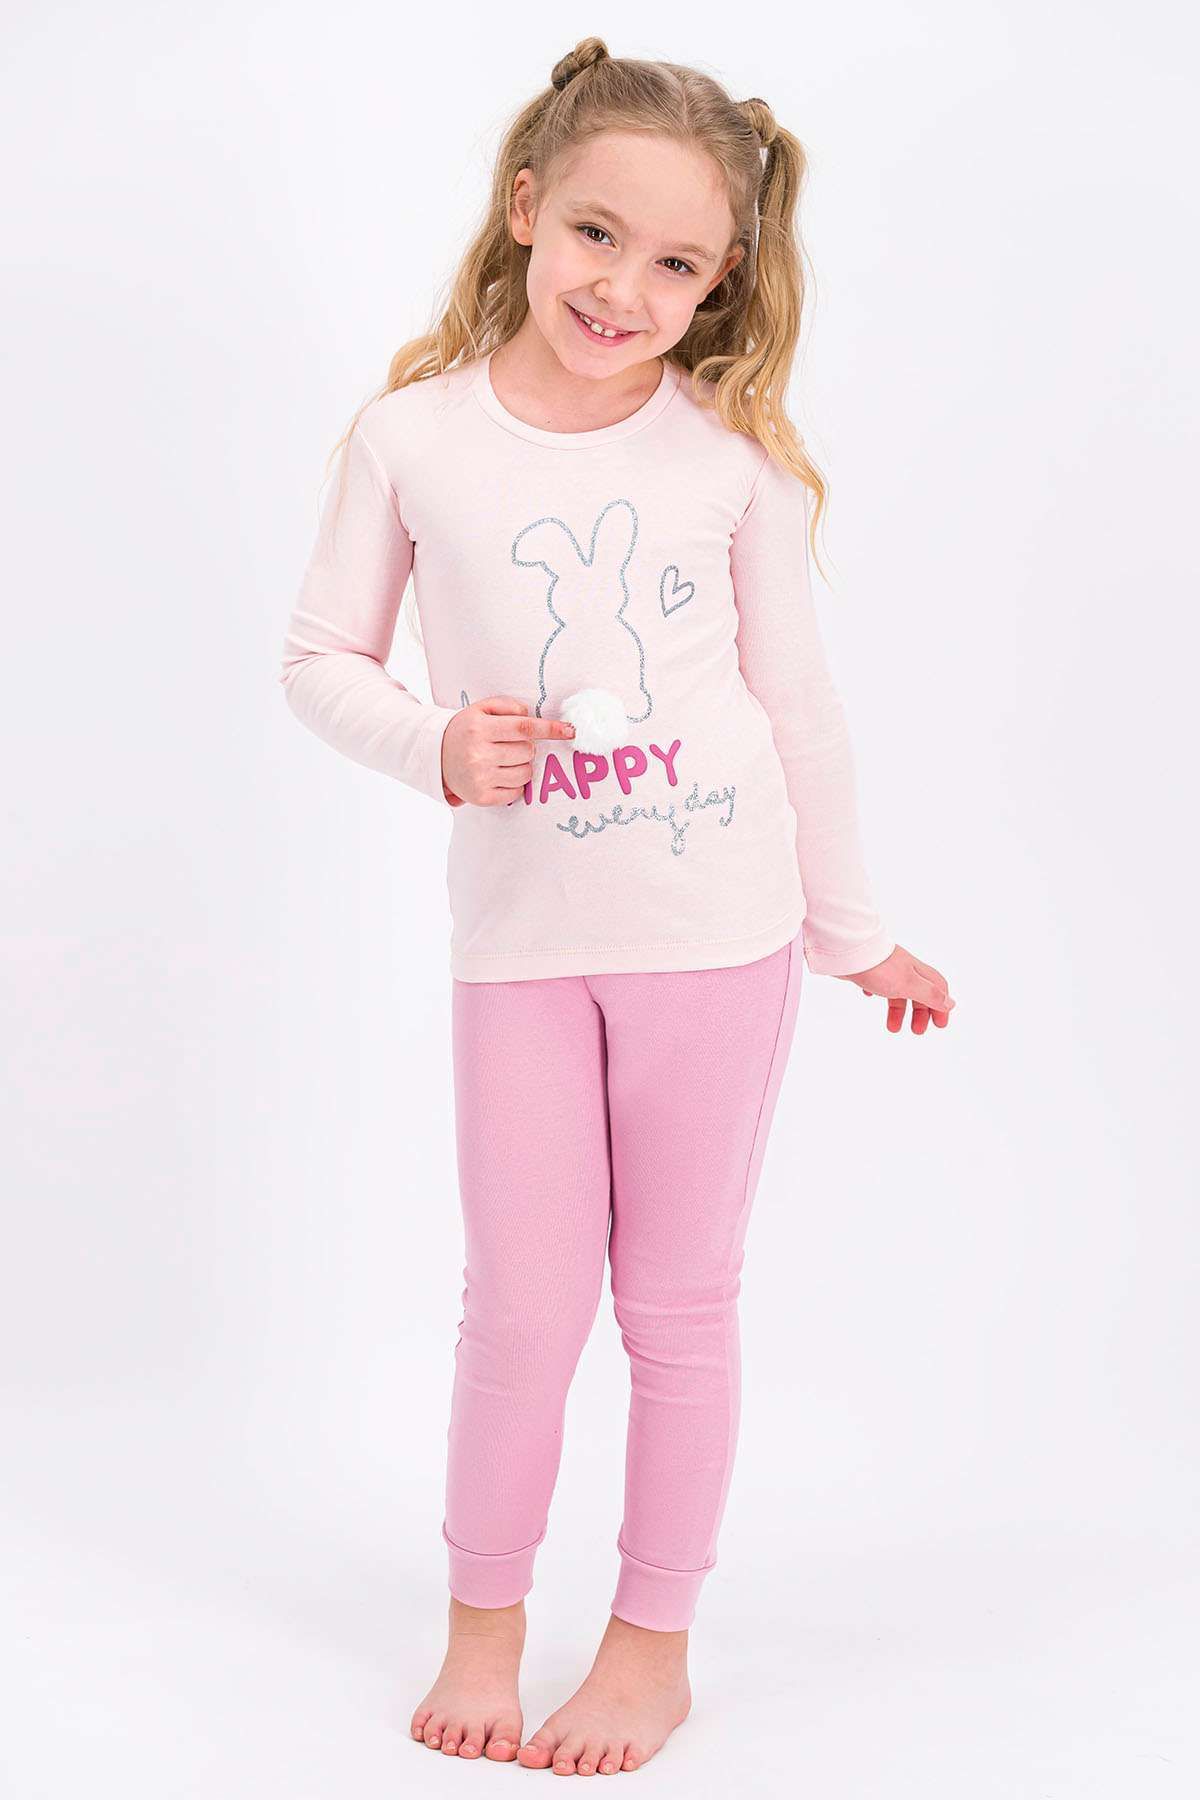 Rolypoly Rolypoly Be Happy Everyday Tozsomon Kız Çocuk Pijama Takımı